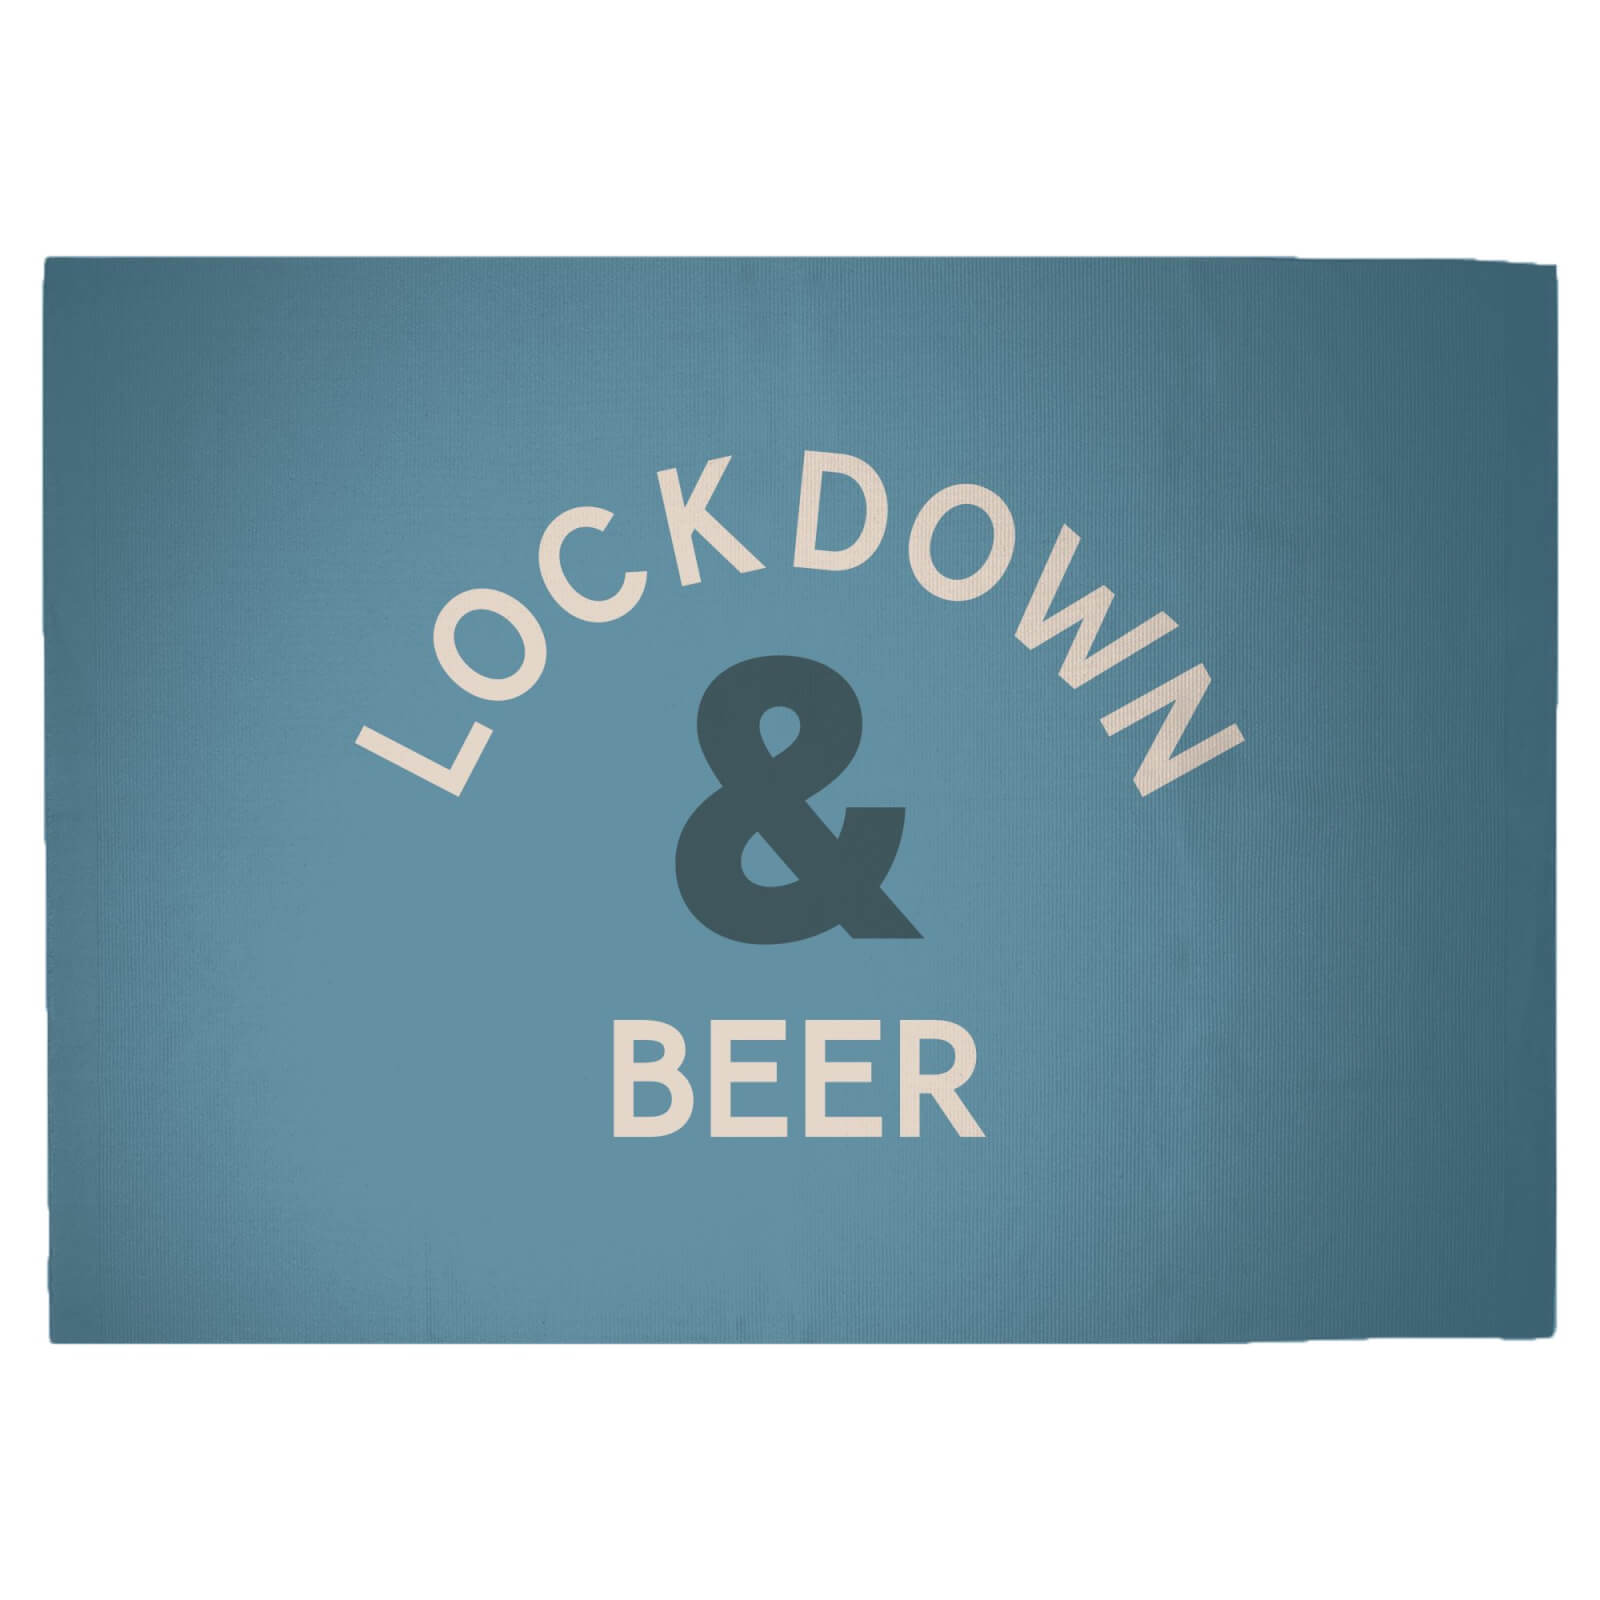 Lockdown & Beer Woven Rug - Large